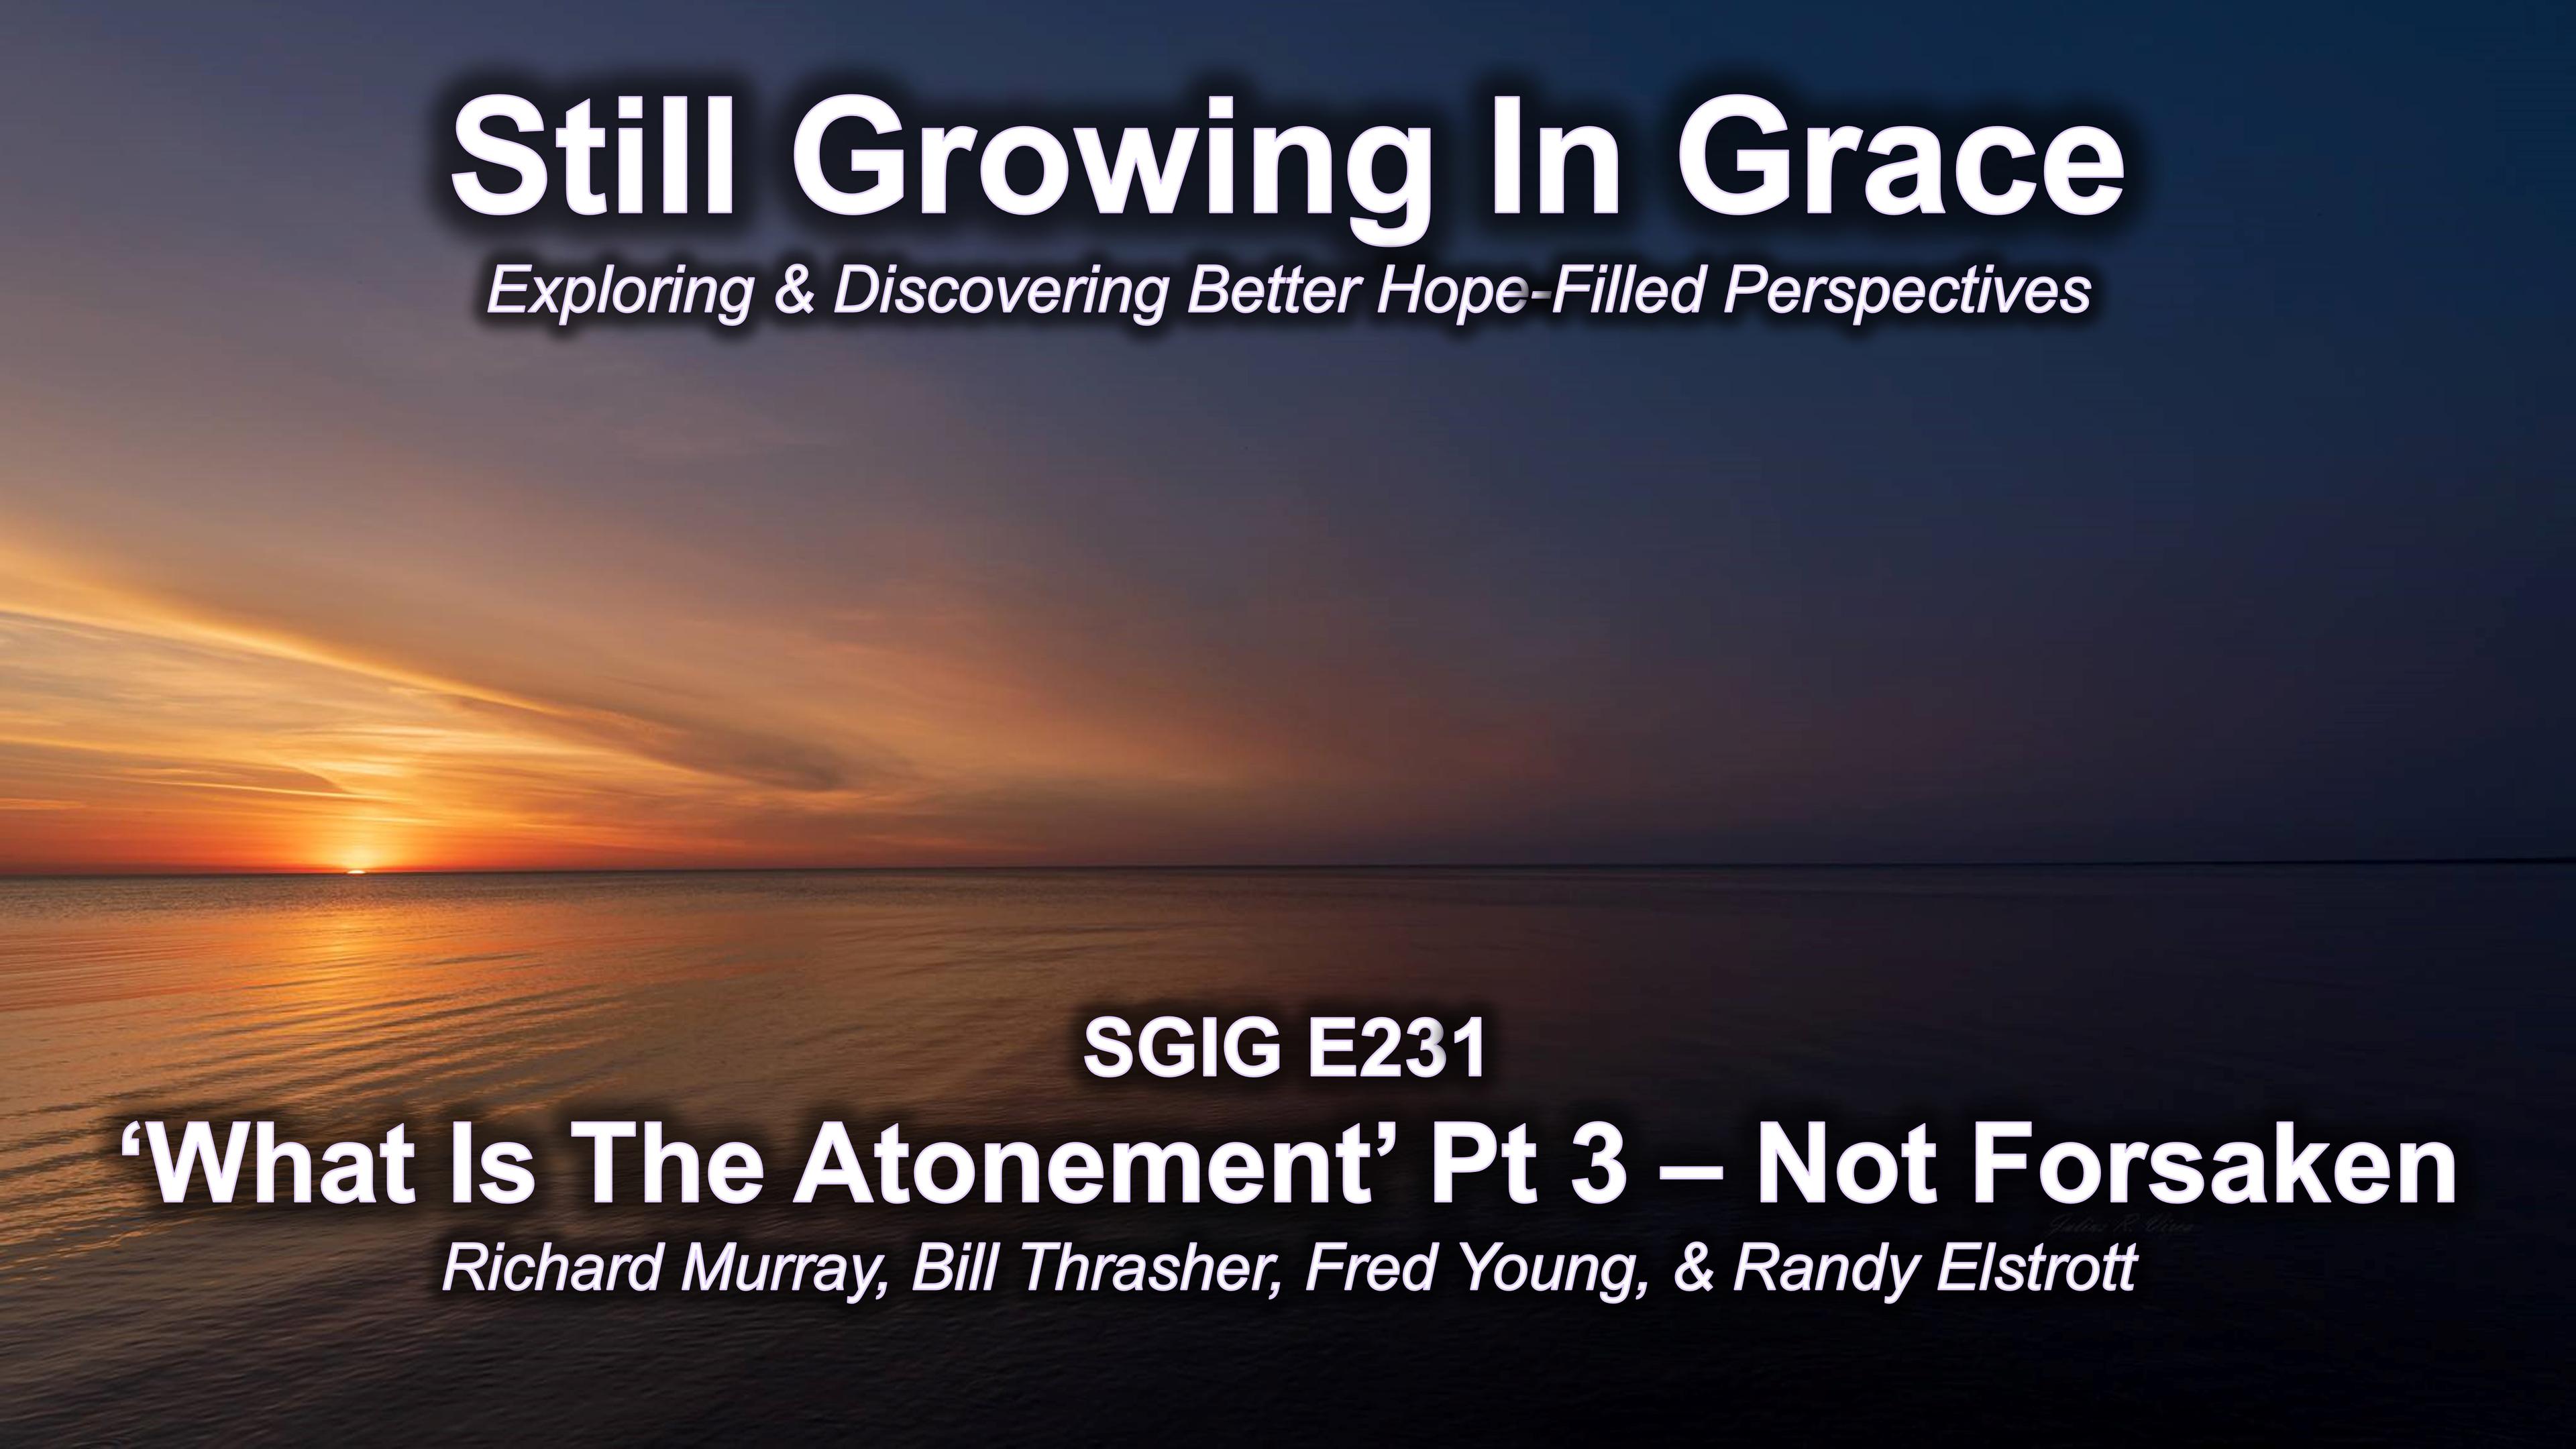 SGIG E231 What Is Atonement Pt 3 – Not Forsaken?